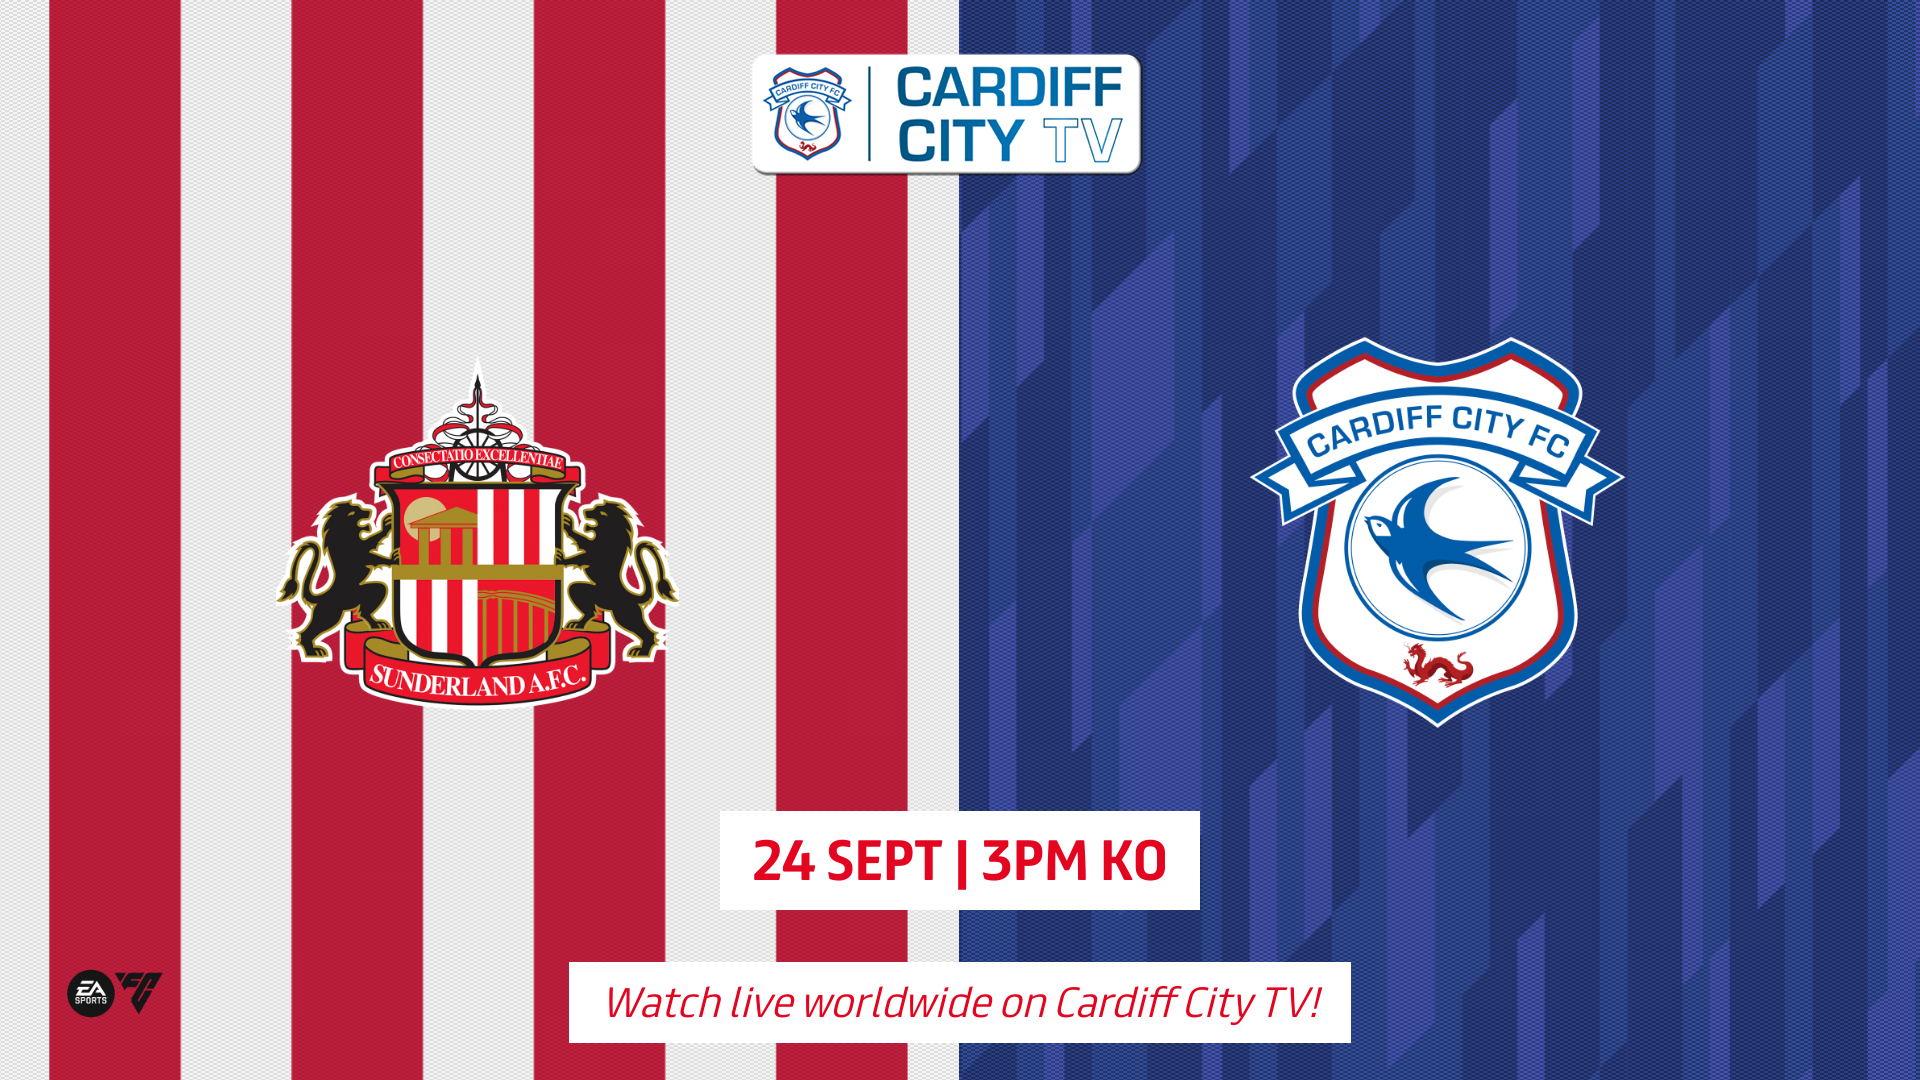 Cardiff City TV Sunderland (A) Cardiff